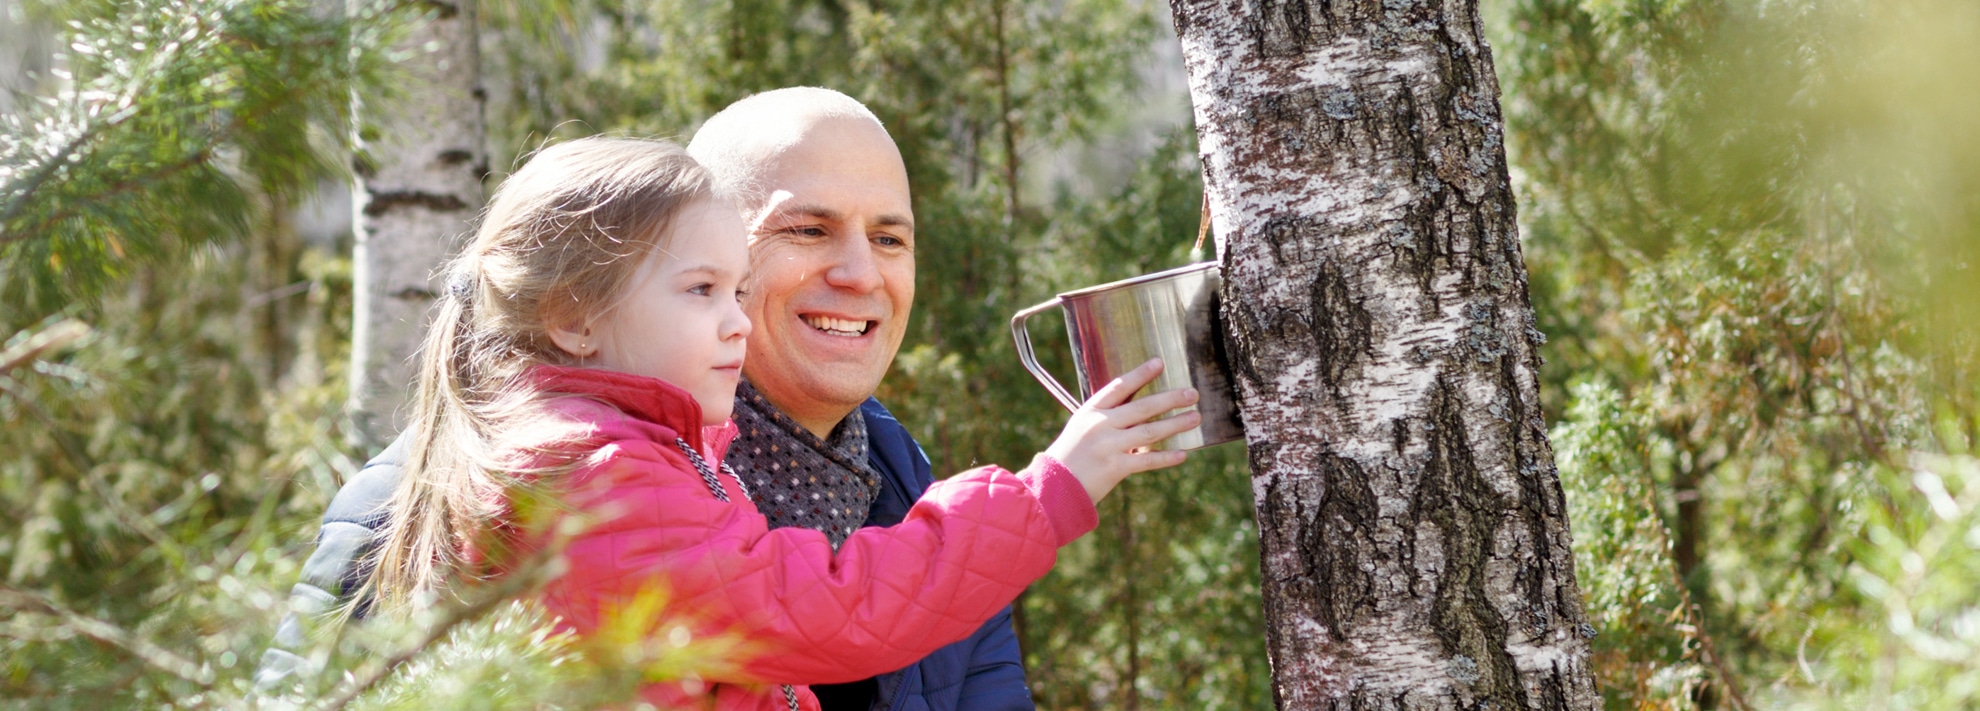 How to harvest birch sap ? - CDL Birch Sap Expert